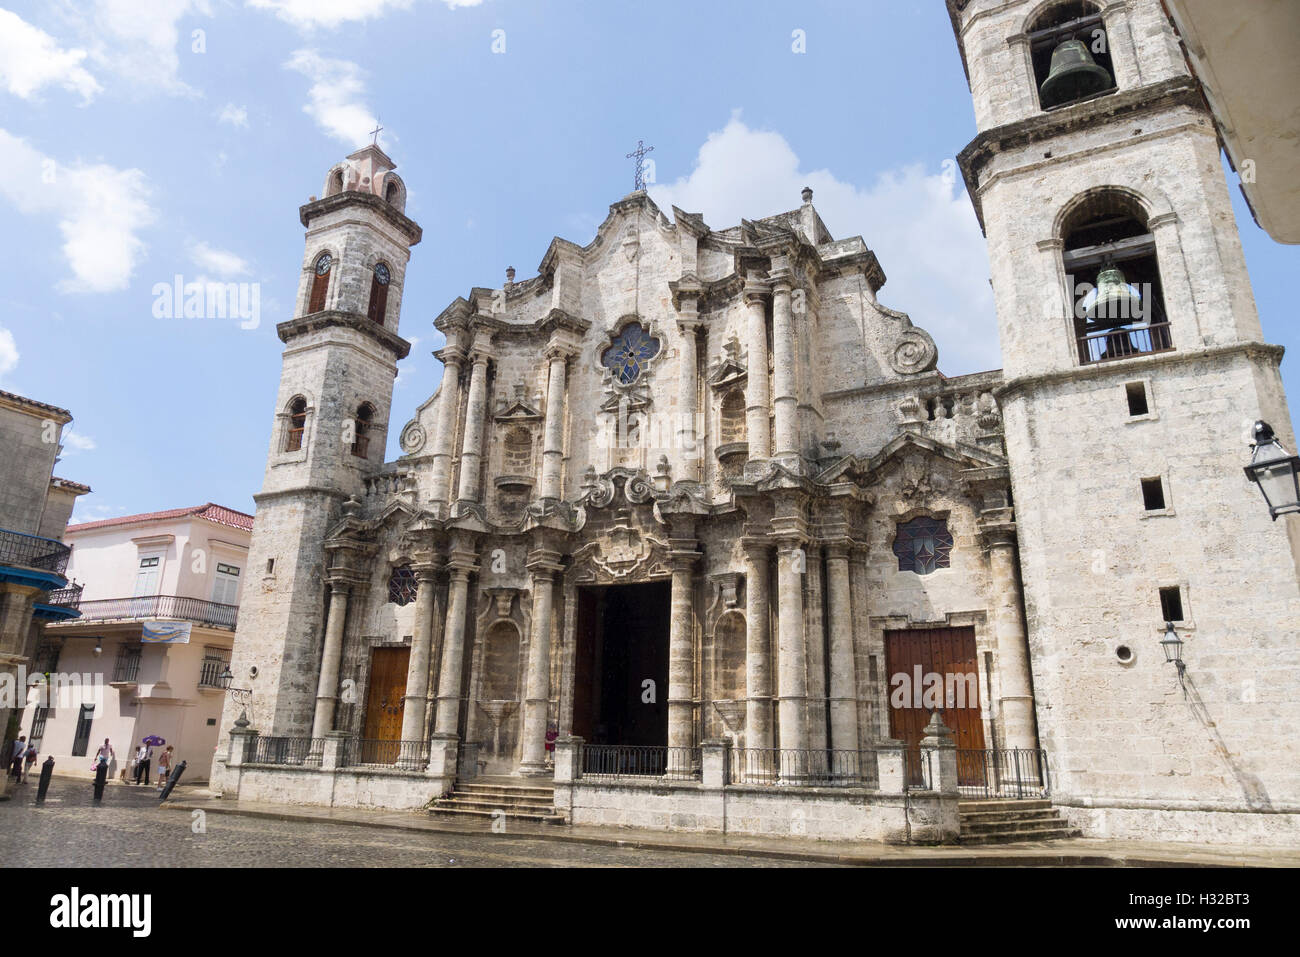 La storica cattedrale della Vergine Maria della Immacolata Concezione costruito nel 1777 in piazza Duomo, Havana Cuba Foto Stock